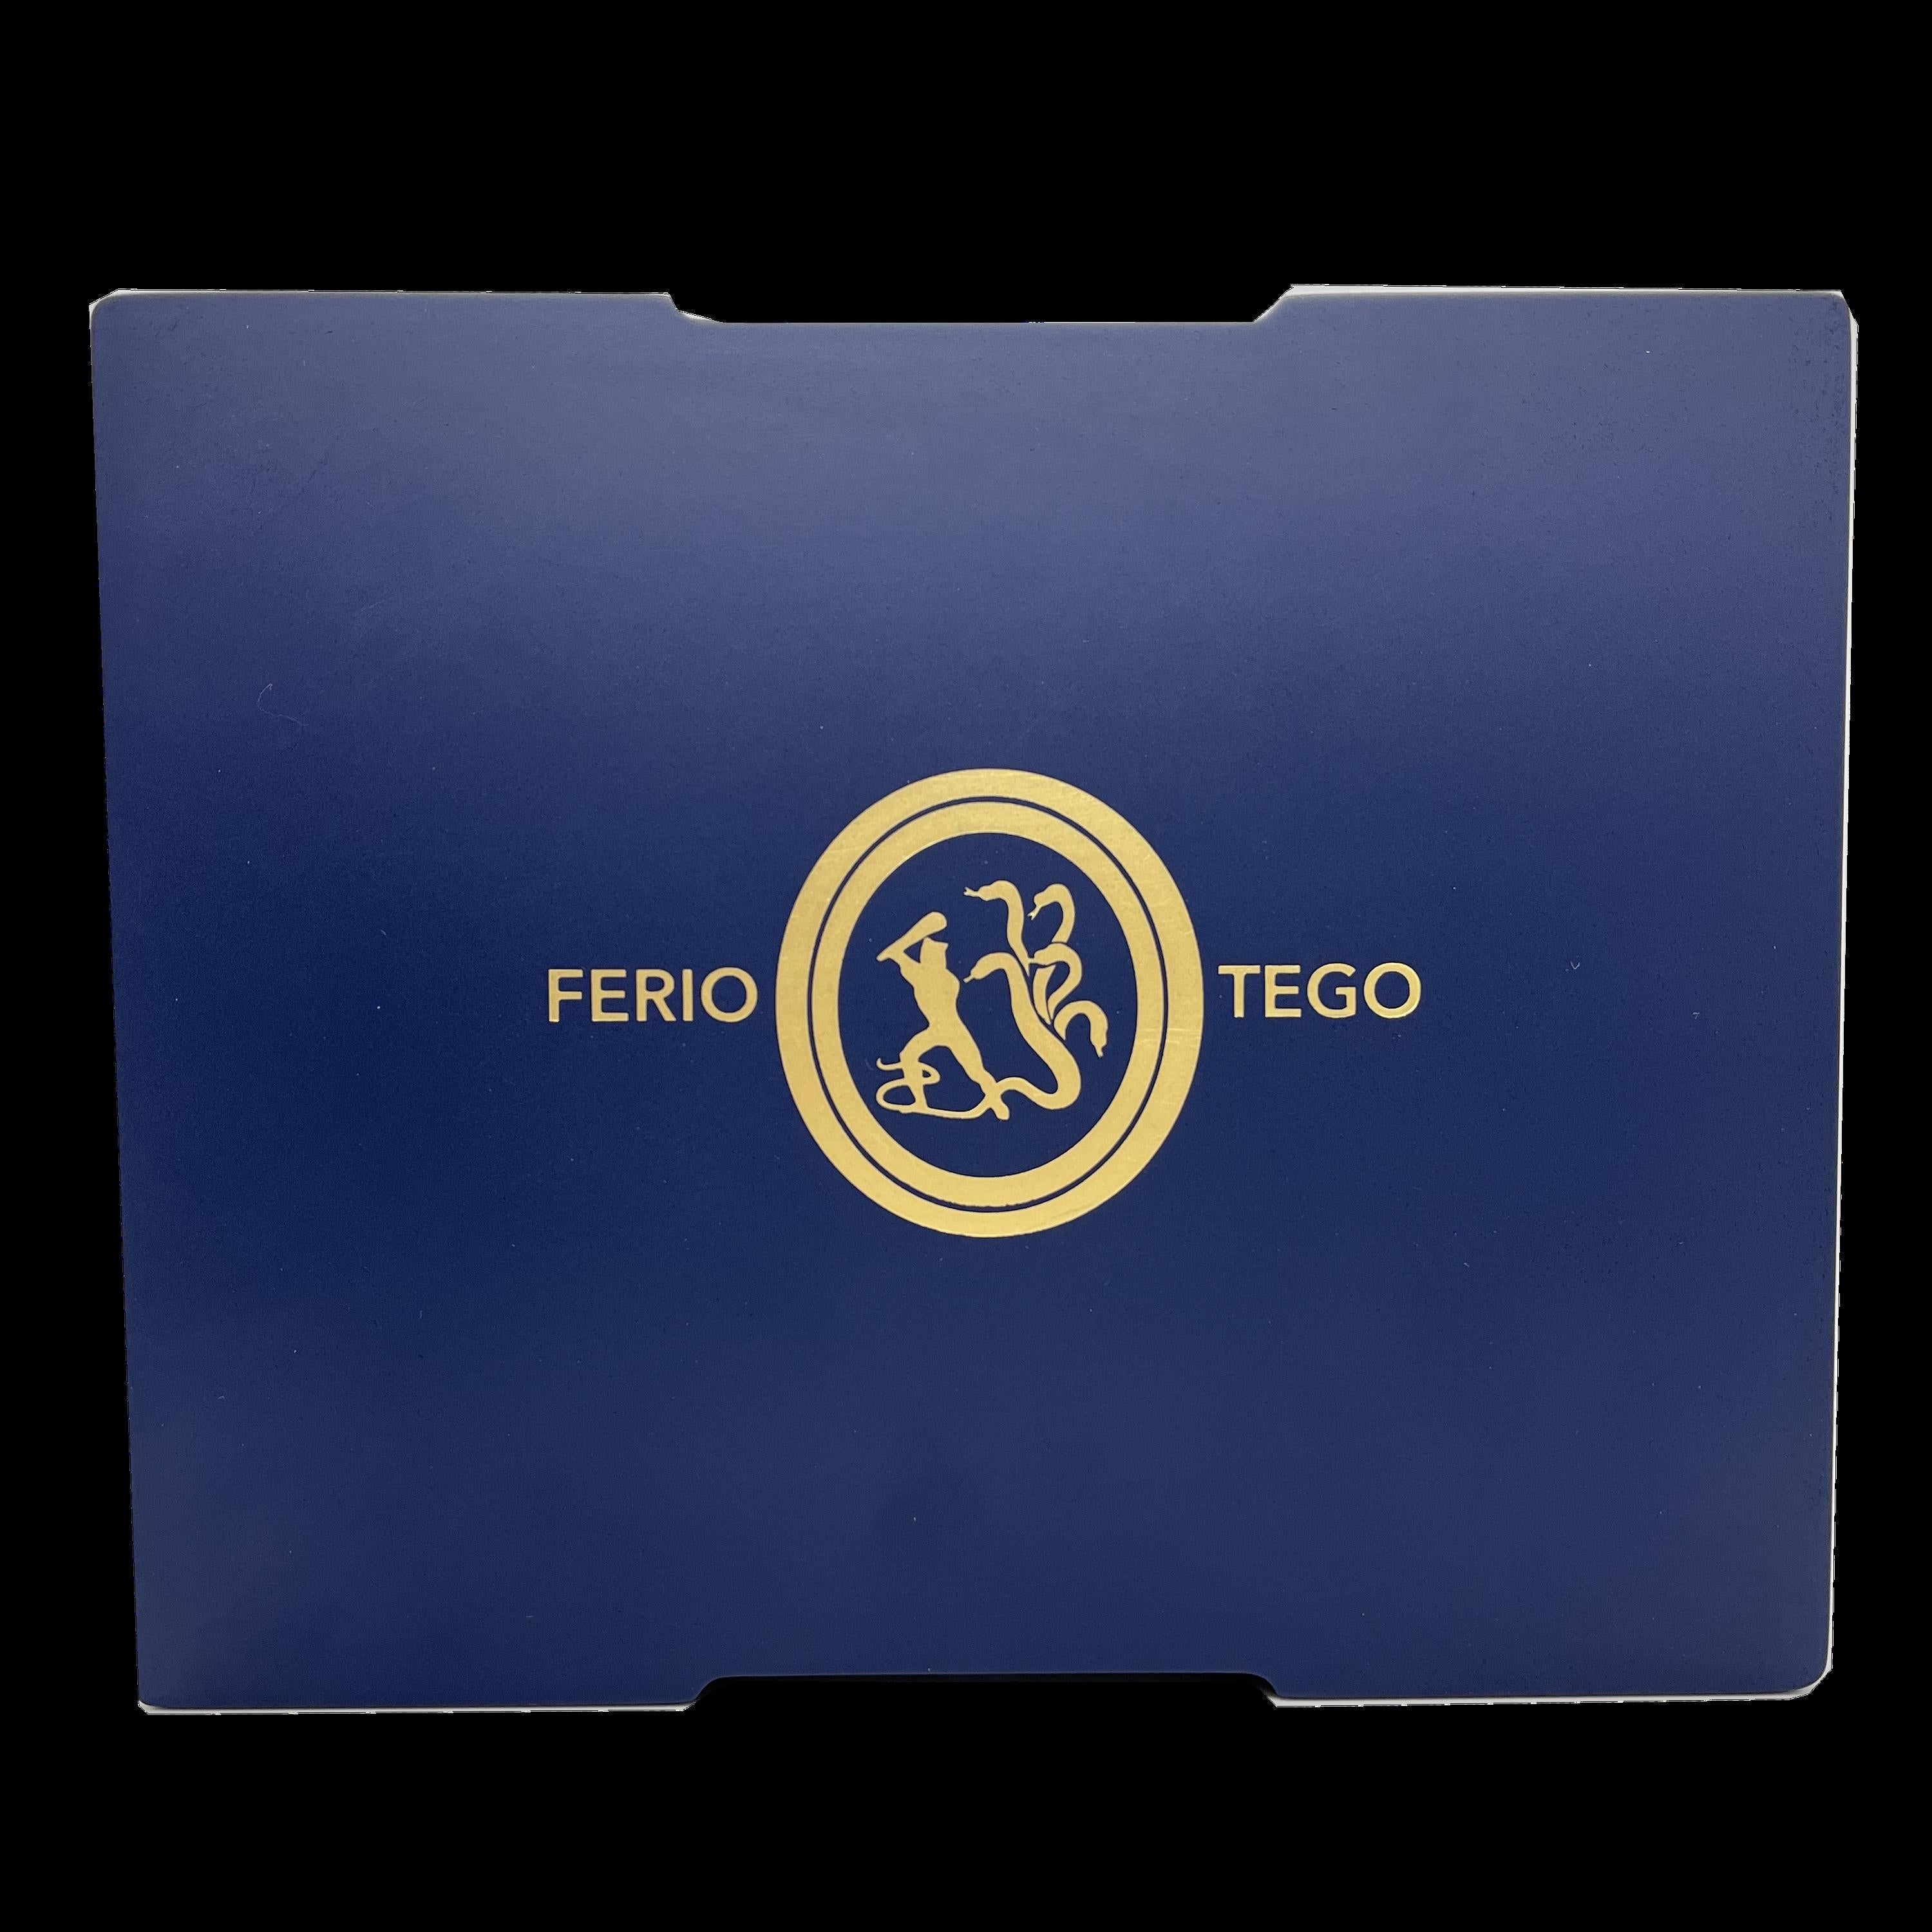 Ferio Tego Cigar Box